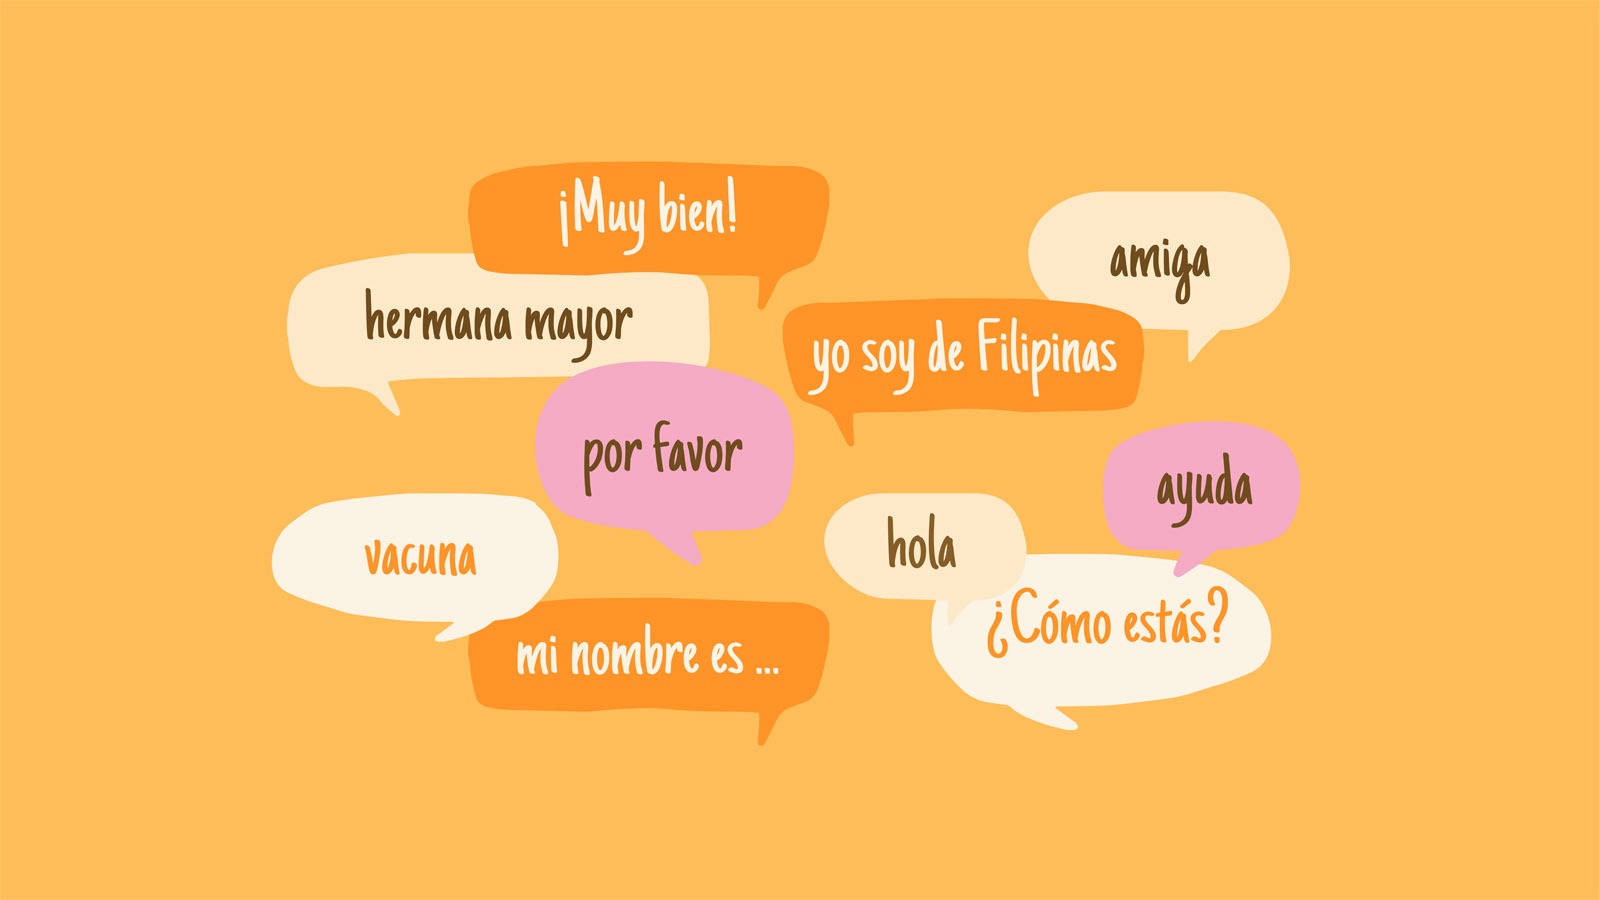 Cómo suena el acento español filipino? | Revista La Jornada Filipina